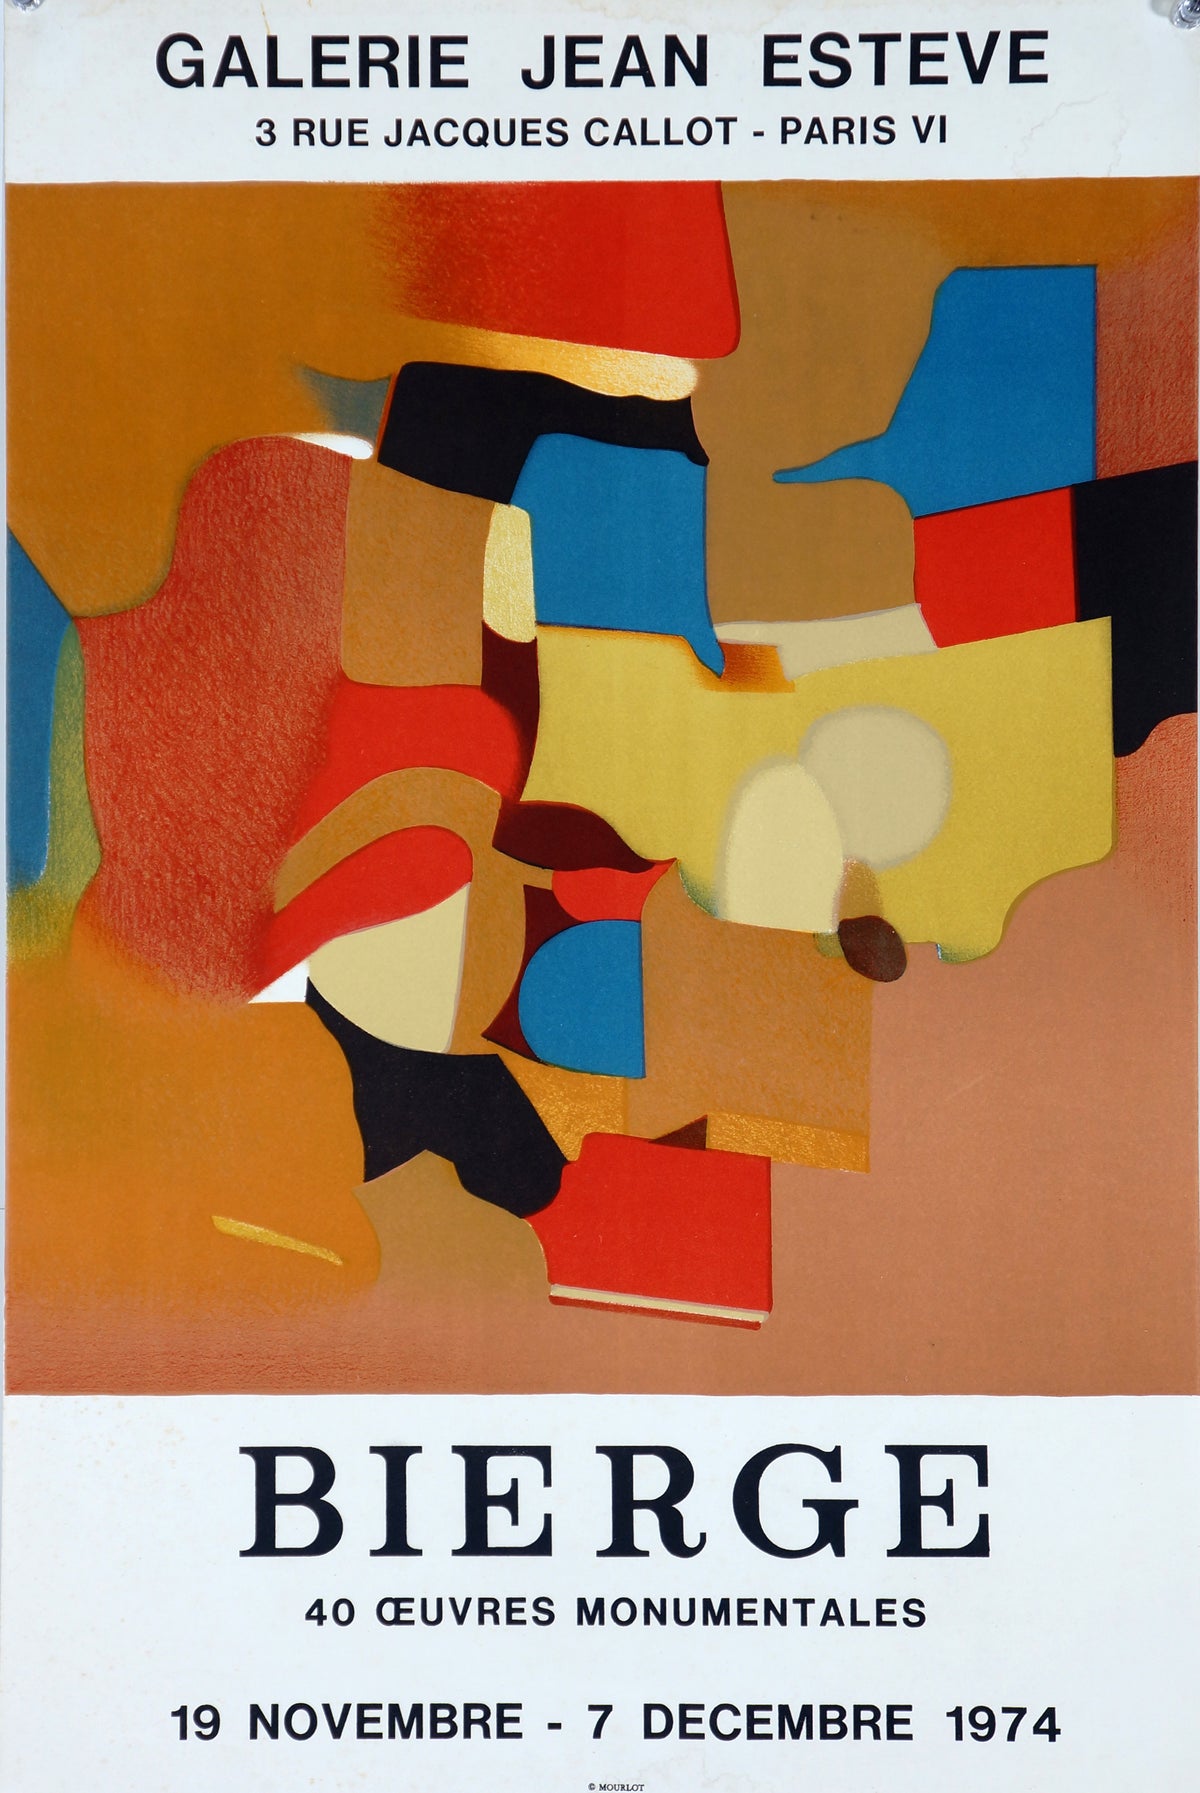 Bierge- Galerie Jean Esteve - Authentic Vintage Poster